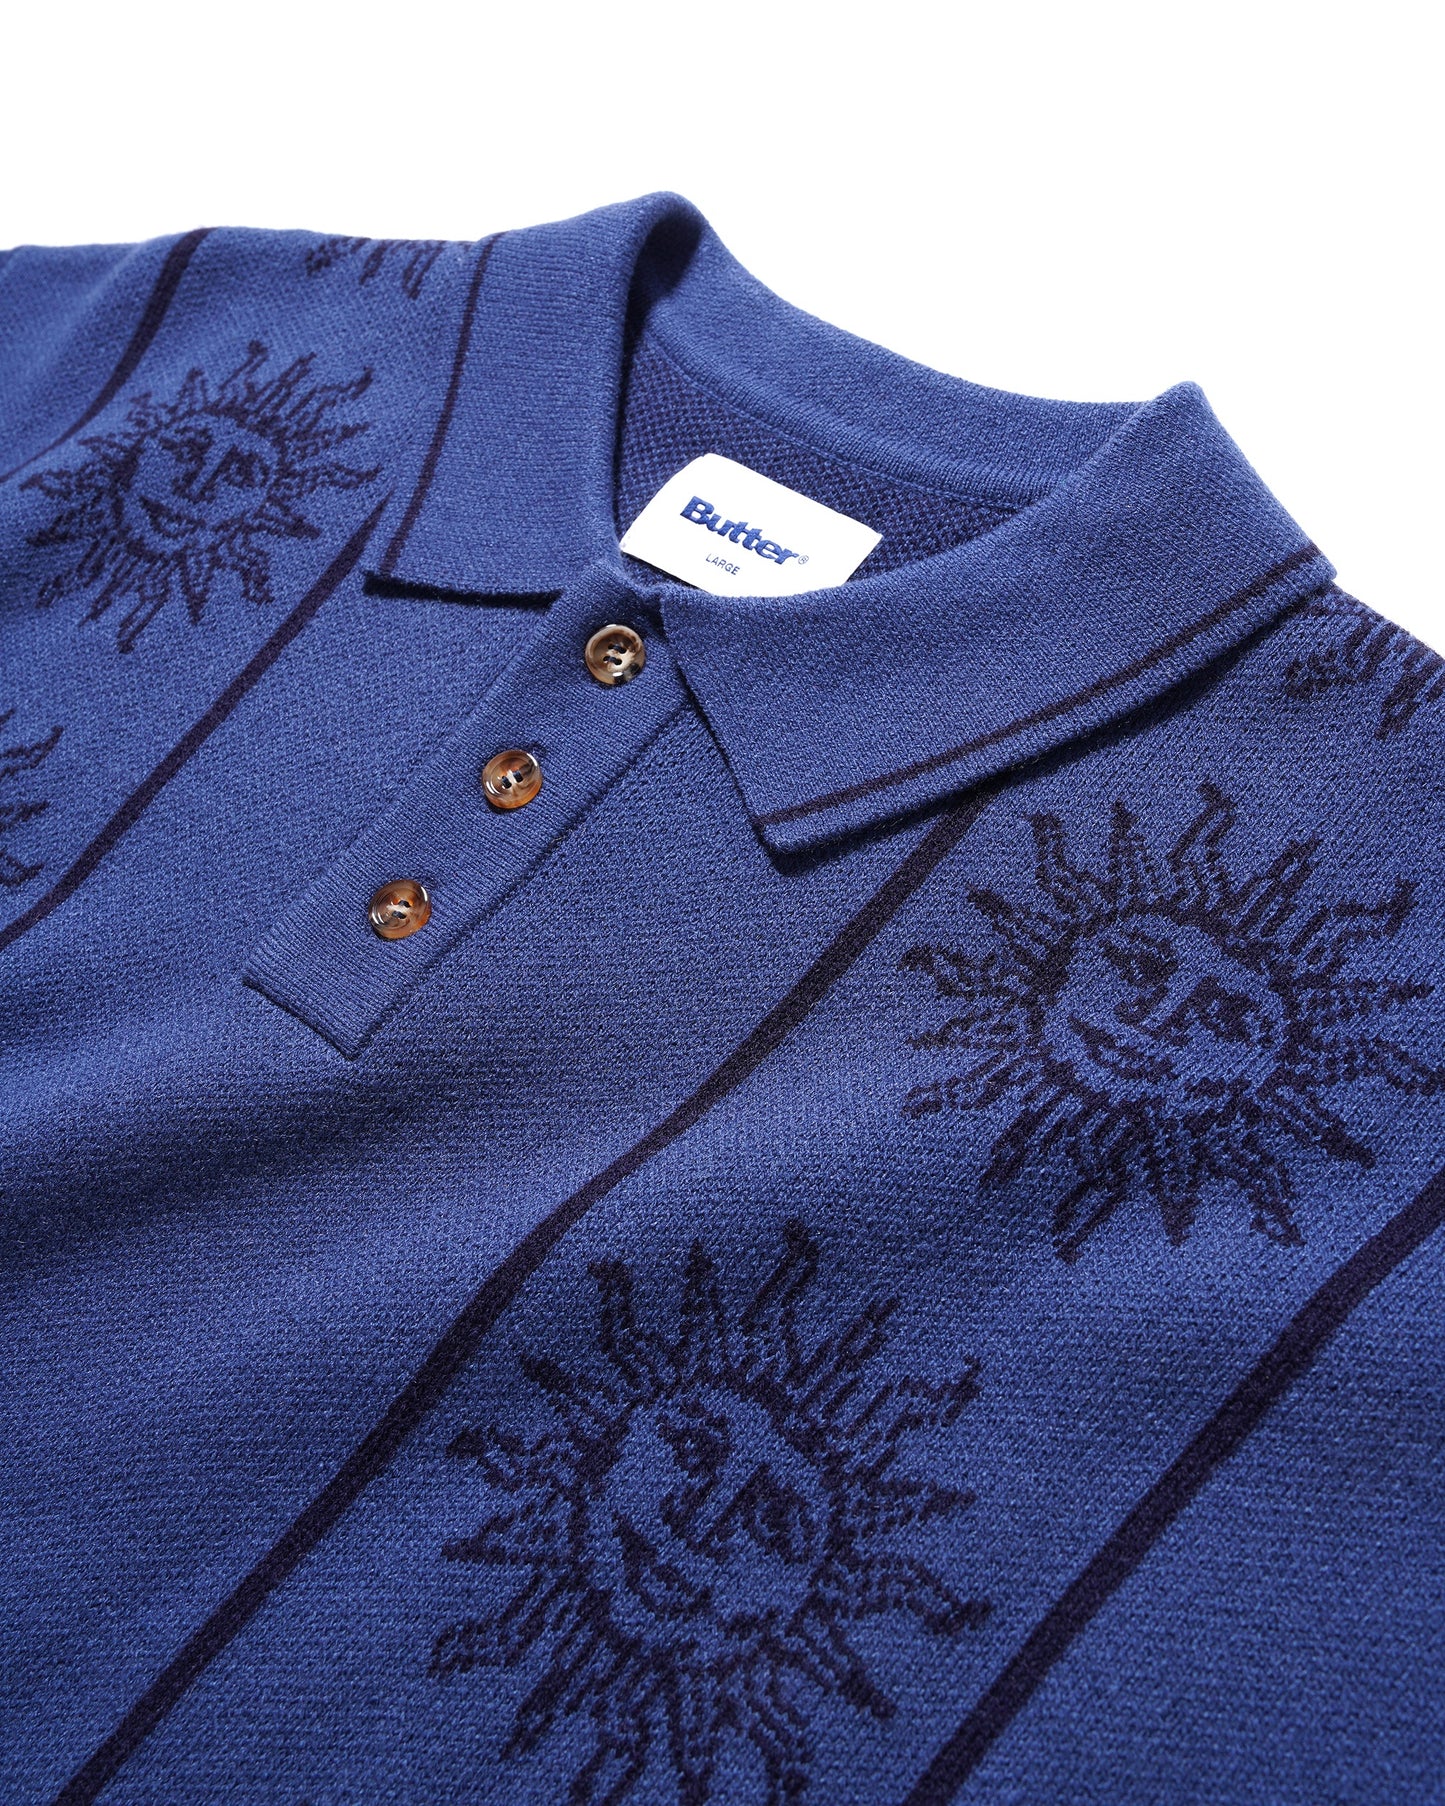 BUTTER GOODS Solar Knit Shirt - Harbour Blue